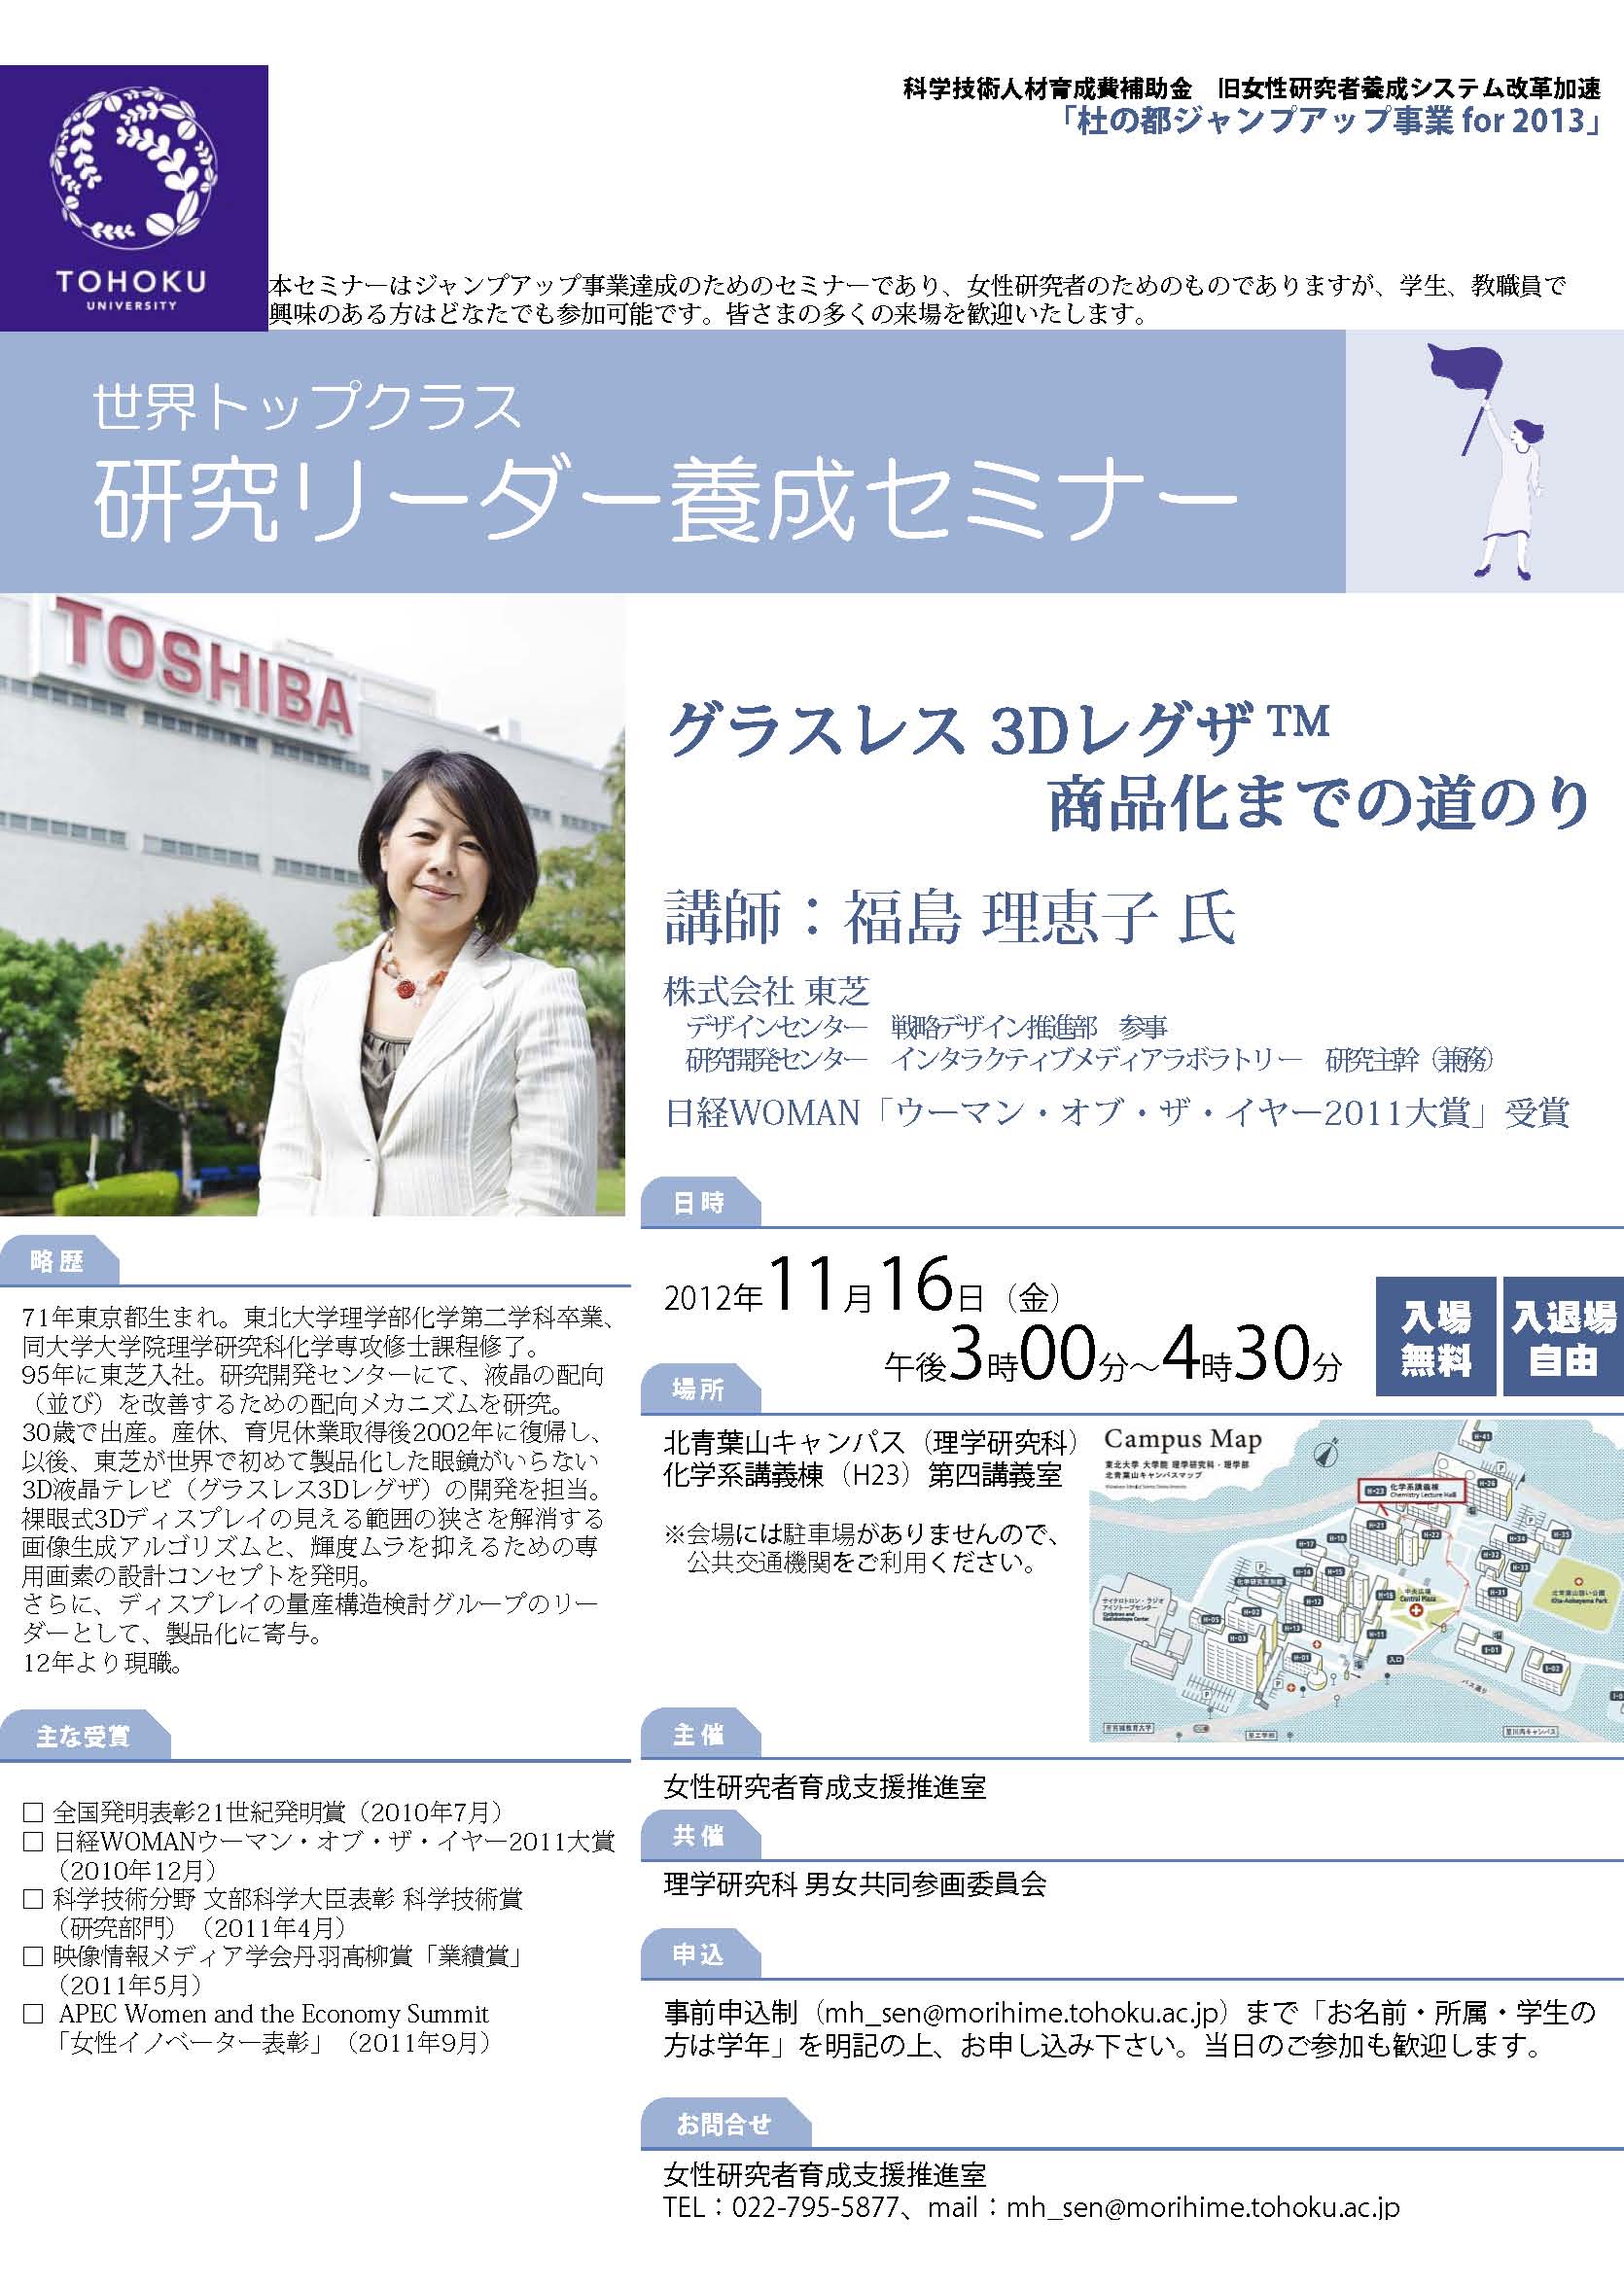 http://www.sci.tohoku.ac.jp/news/20121116.jpg